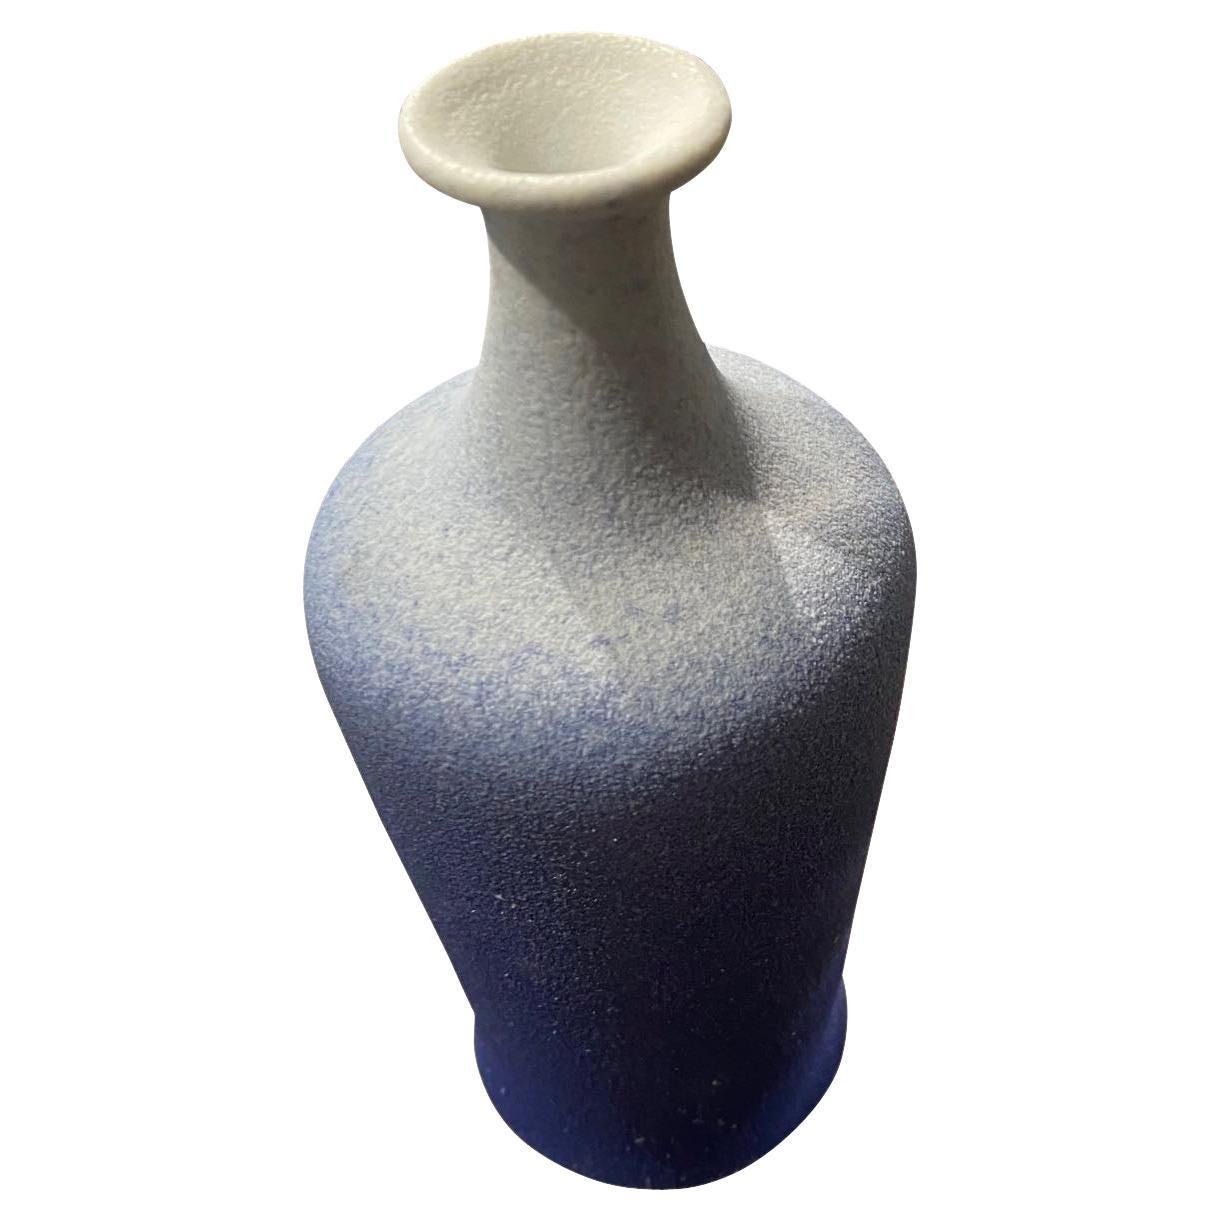 Zeitgenössische chinesische ombre blau glasierte Vase.
Geschwungener Sockel mit hohem Ausguss.
Teil einer großen Sammlung.